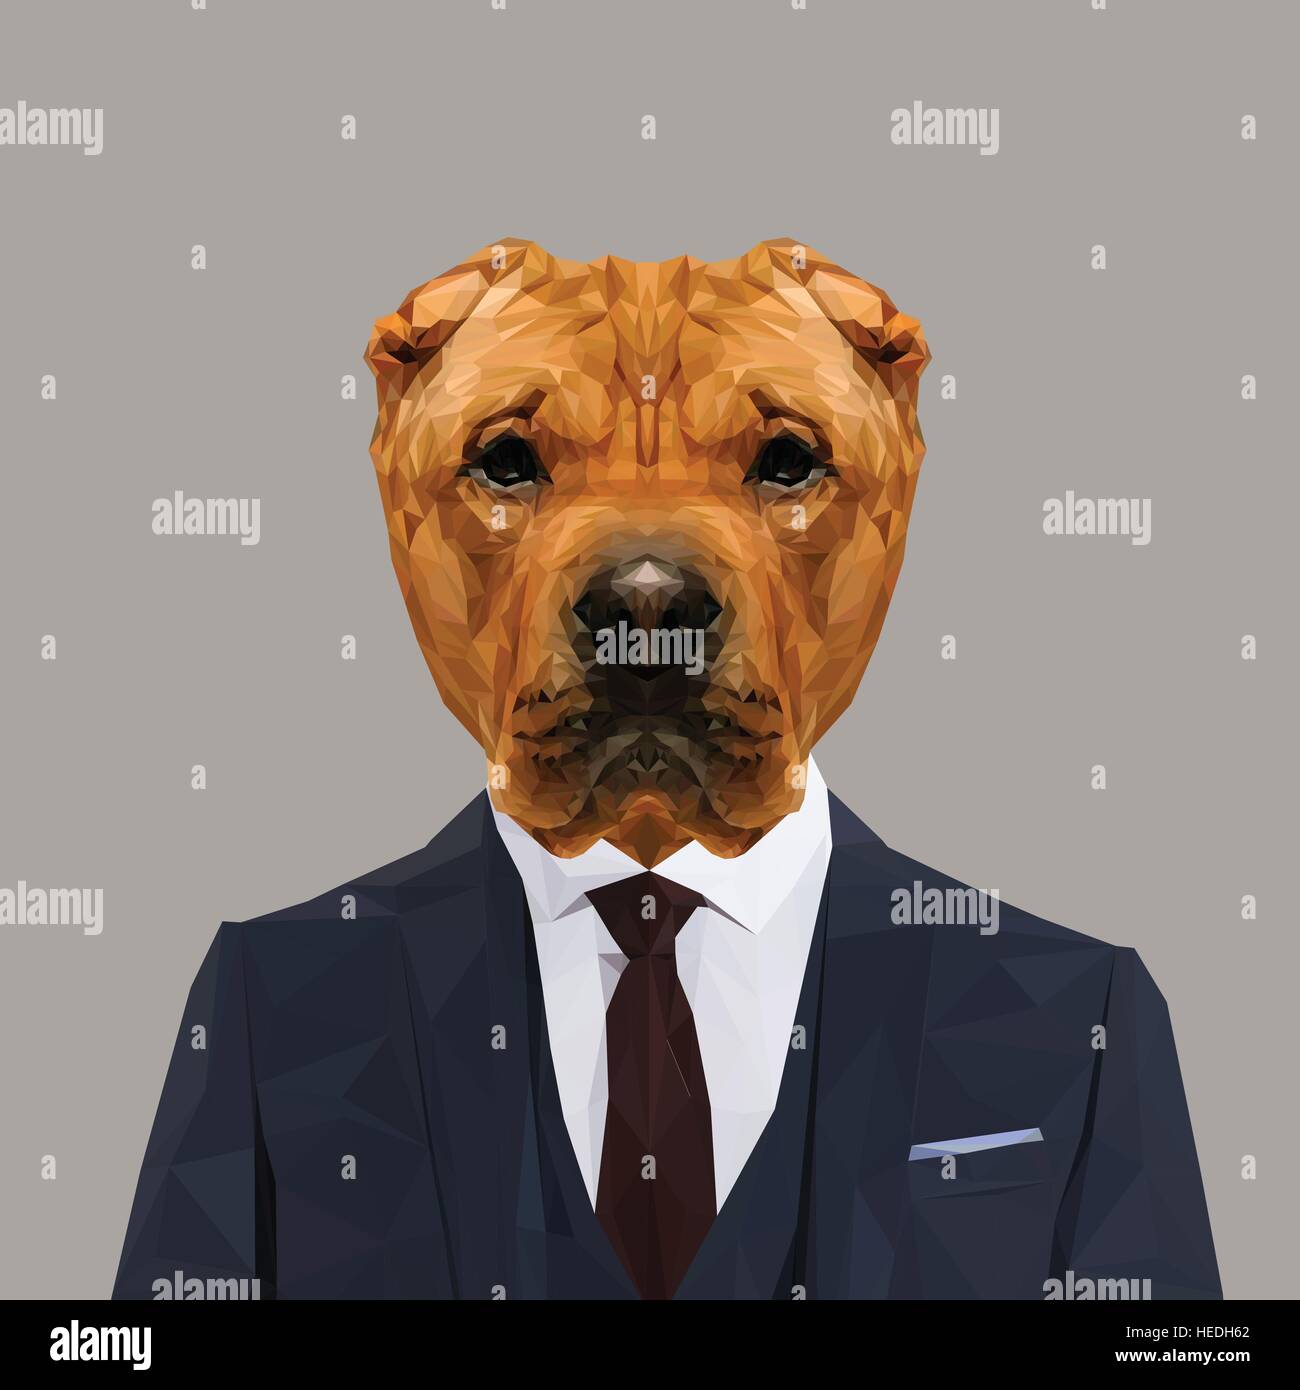 Shar Pei chien animal habillés en costume bleu marine avec cravate rouge.  Homme d'affaires. Vector illustration Image Vectorielle Stock - Alamy